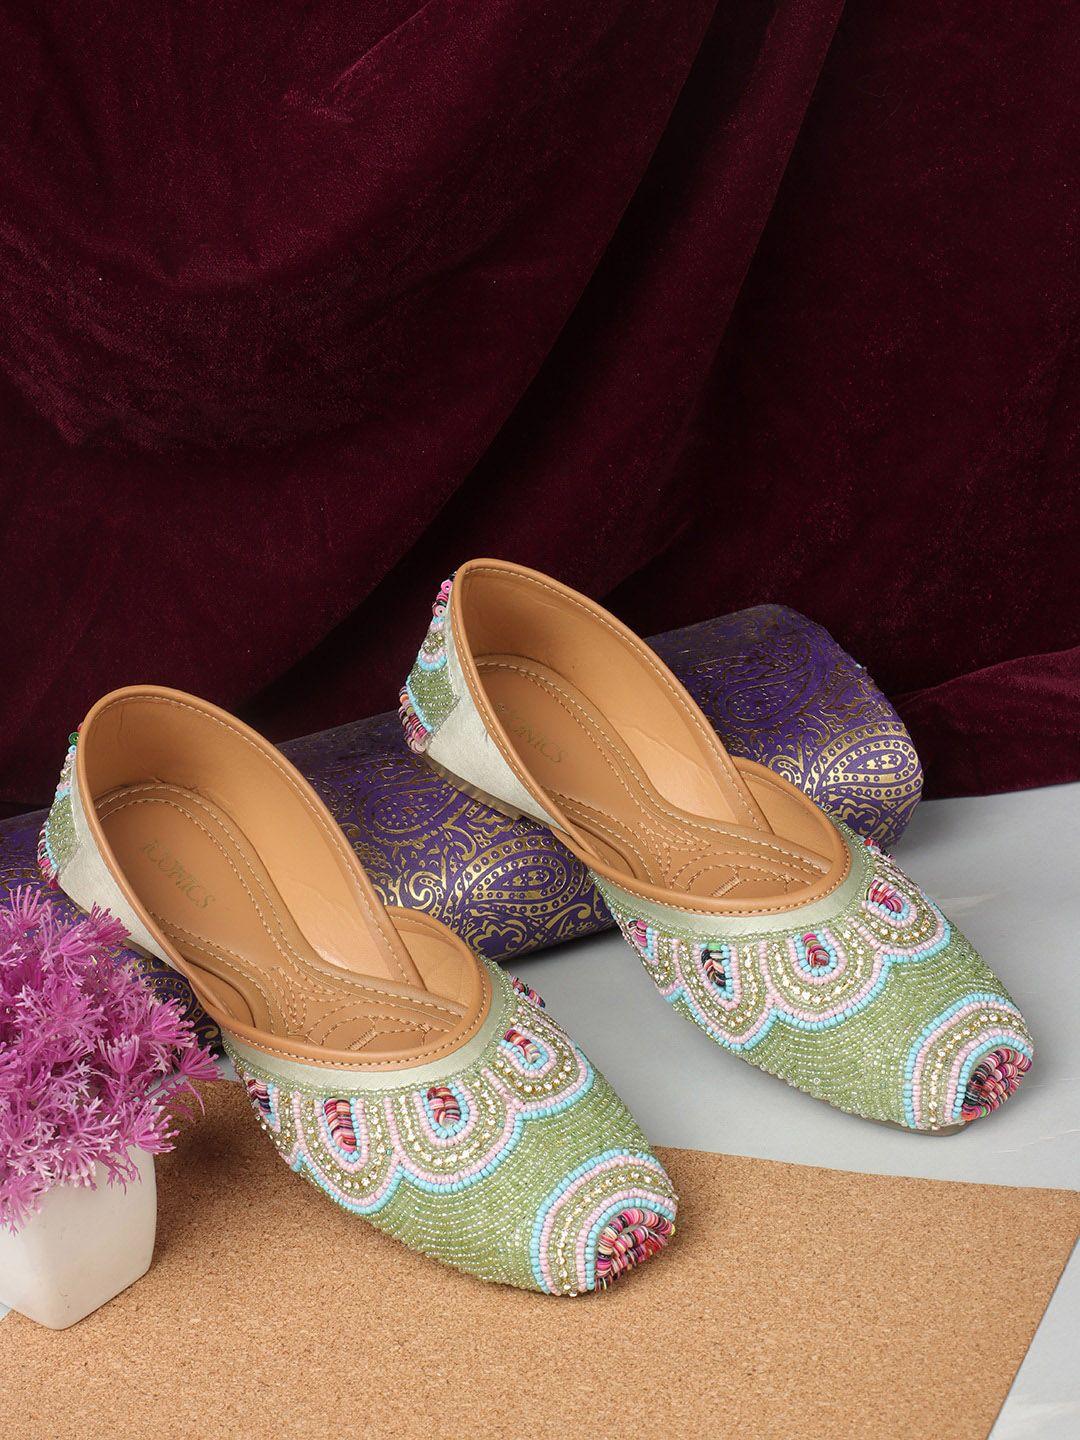 iconics square toe embroidered ethnic embellished mojaris